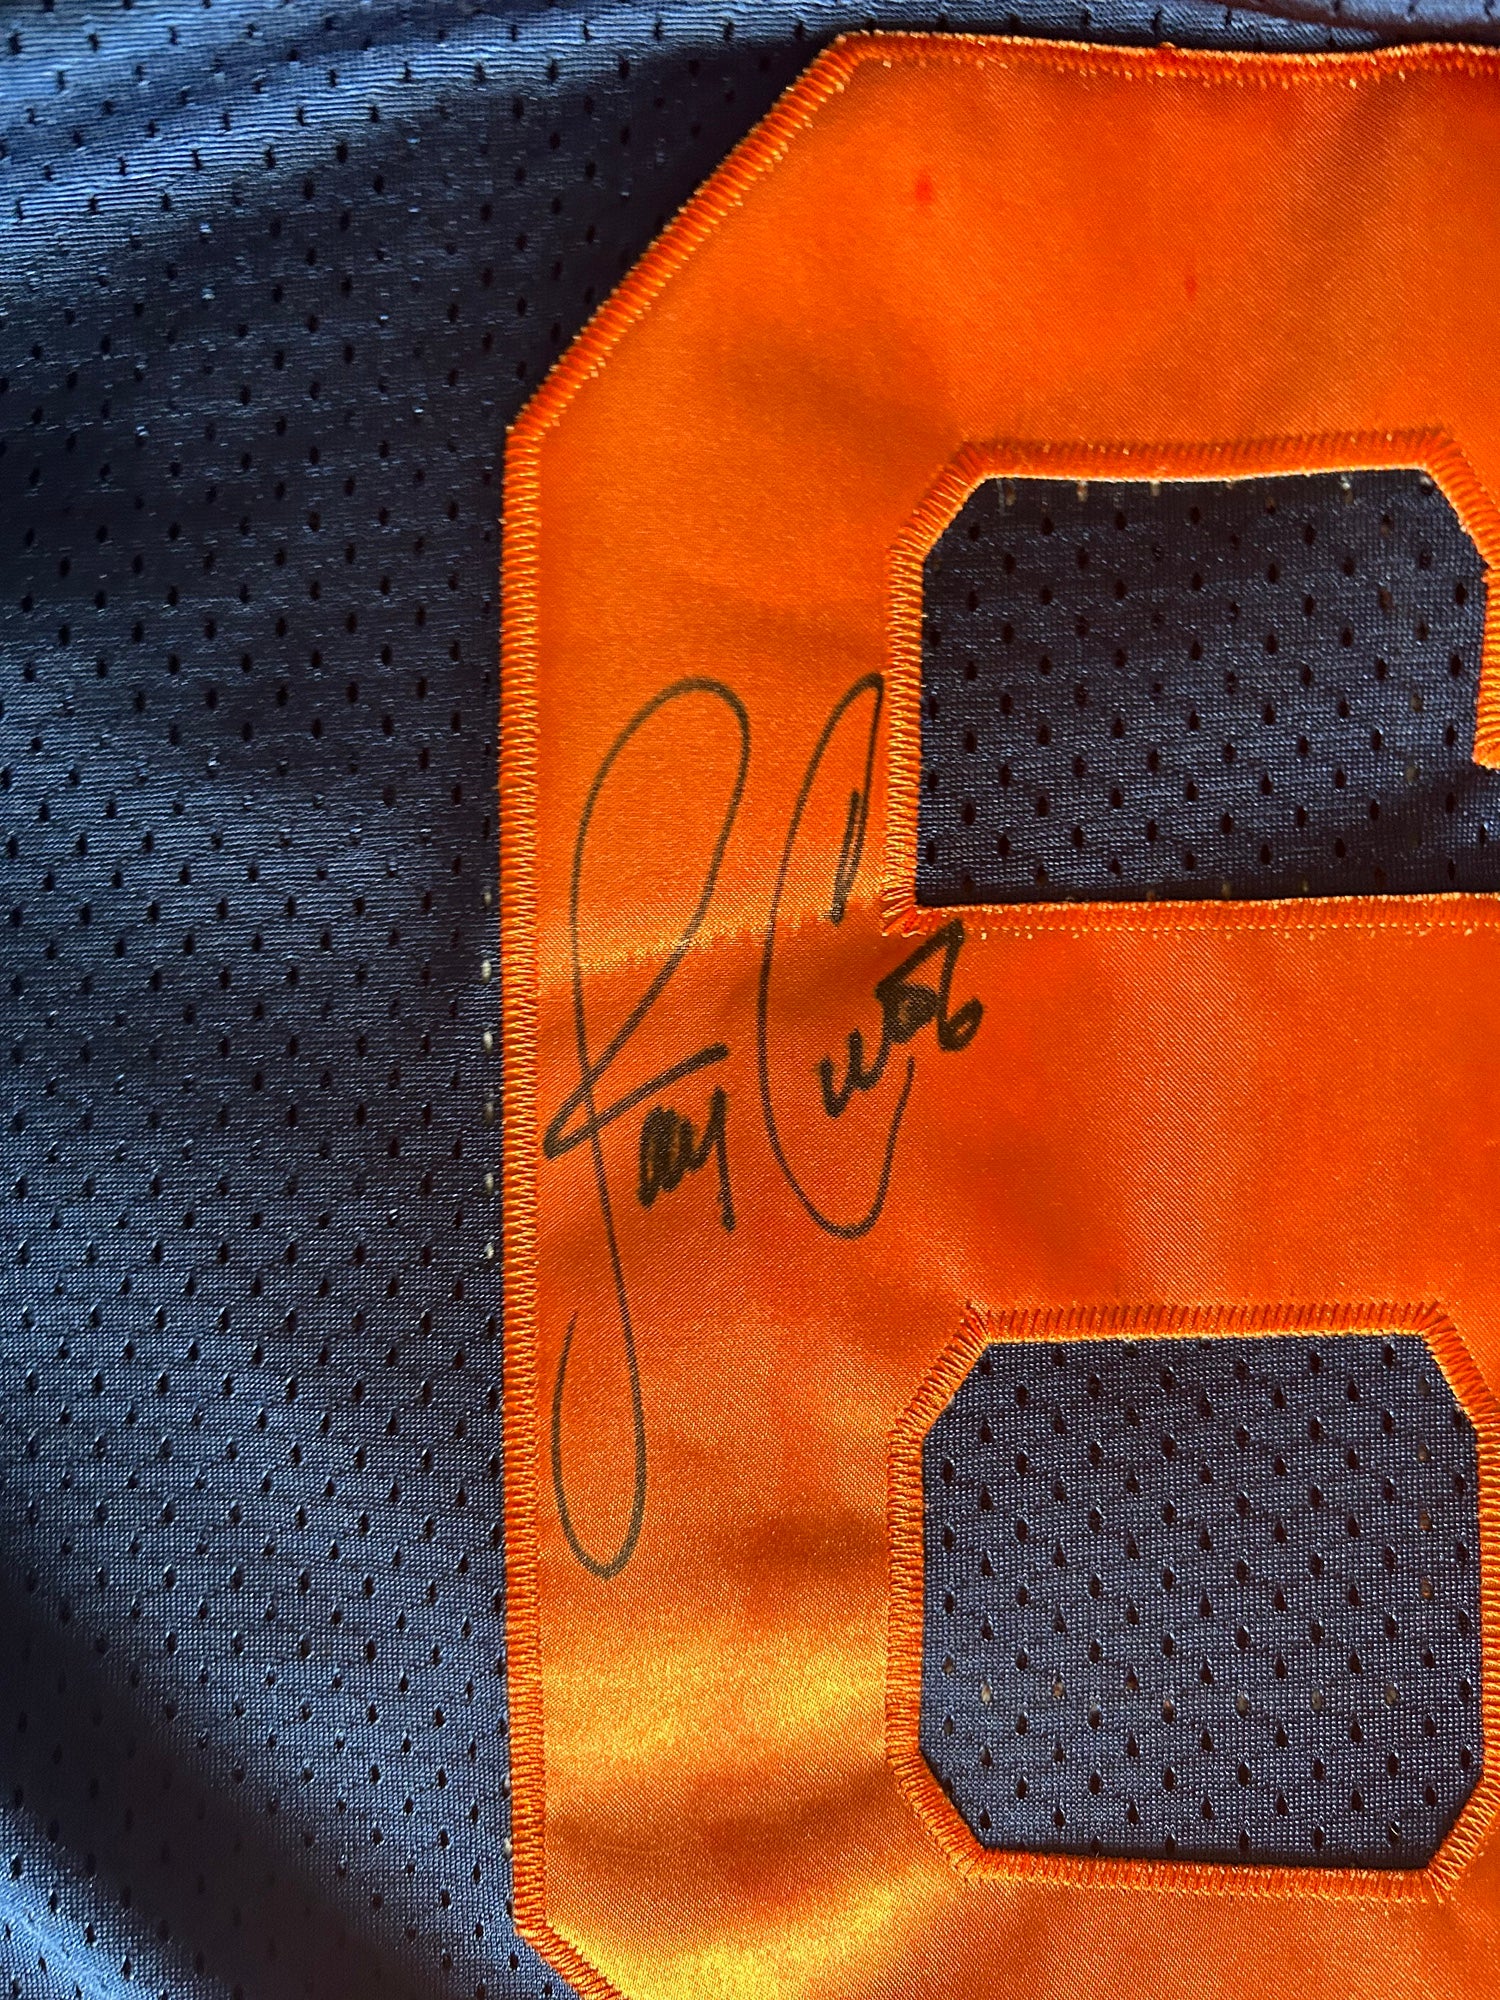 NFL Denver Broncos Jay Cutler #6 Football Jersey Blue Orange Men's Large